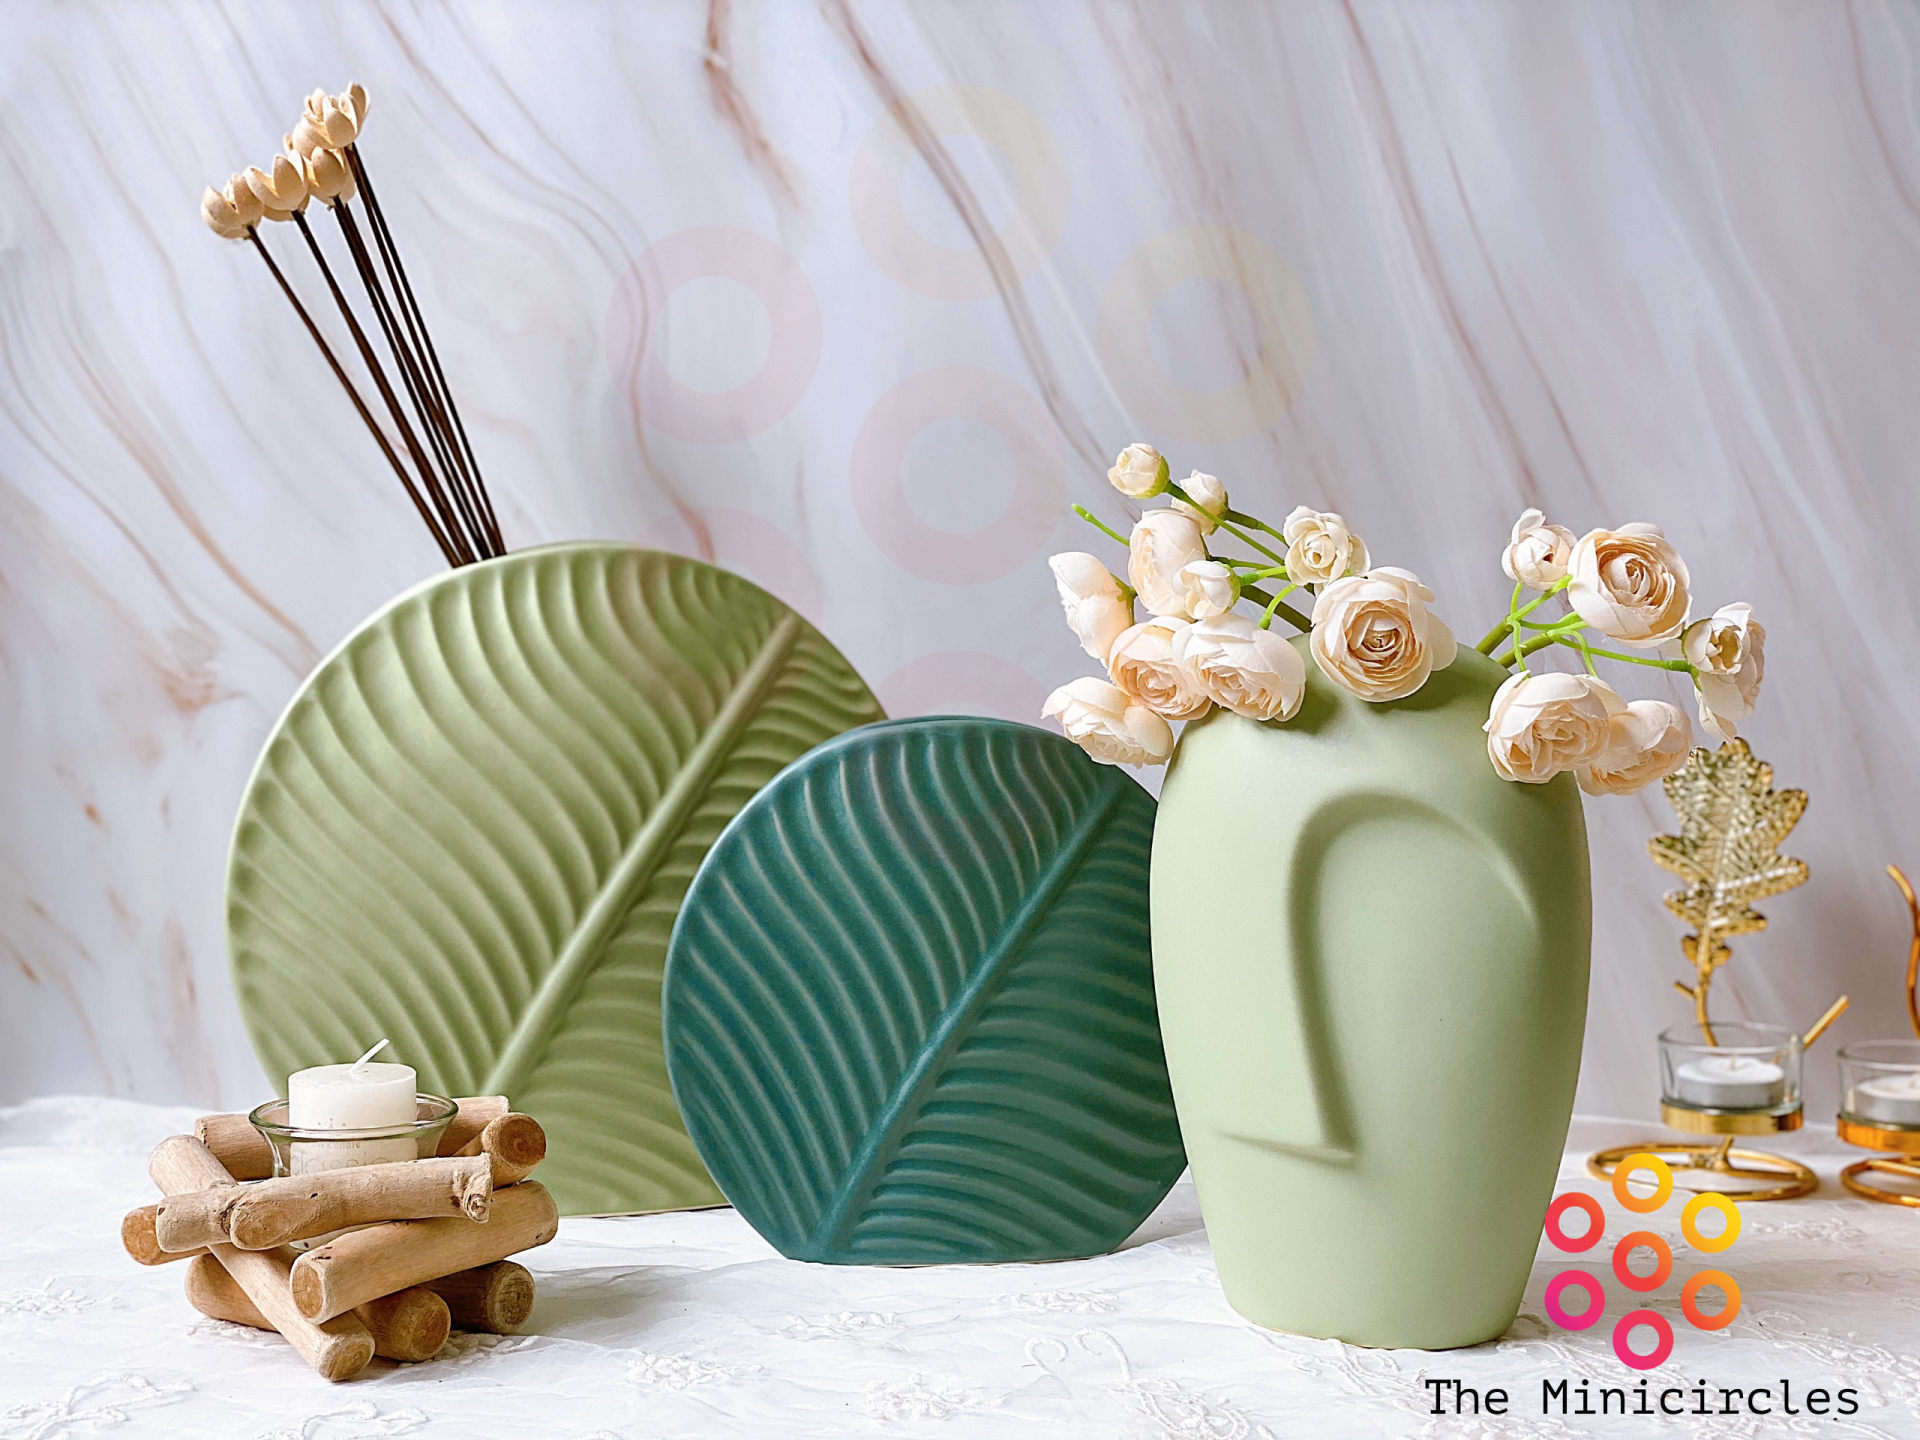 Những mẫu lọ gốm nghệ thuật vừa được sử dụng để cắm hoa vừa để trang trí cho căn phòng thêm đẹp. (Ảnh: The Minicircles)